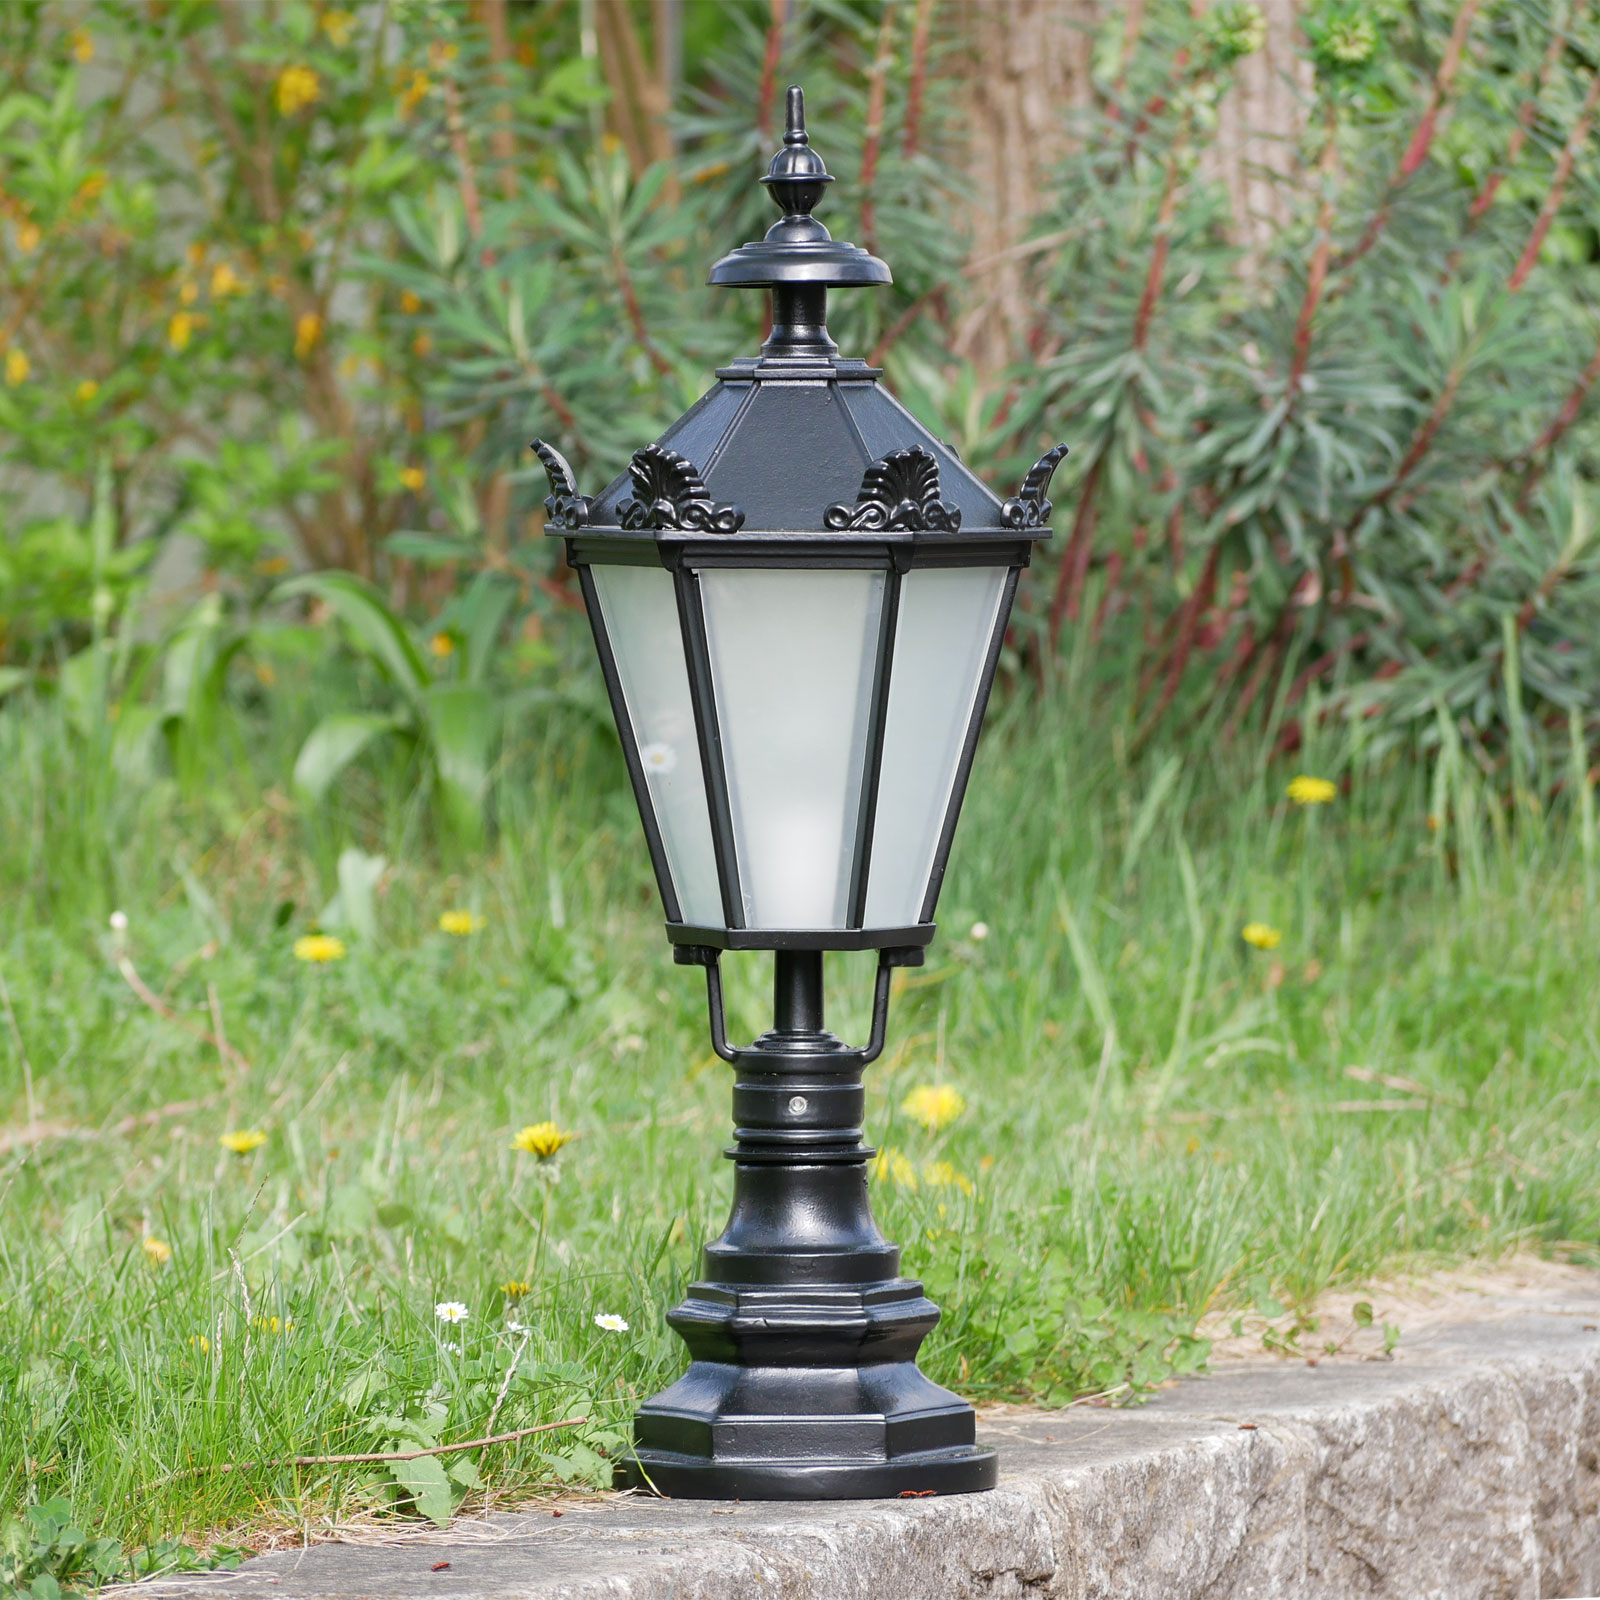 Pedestal Light Cypr with Lantern in Schinkel Style